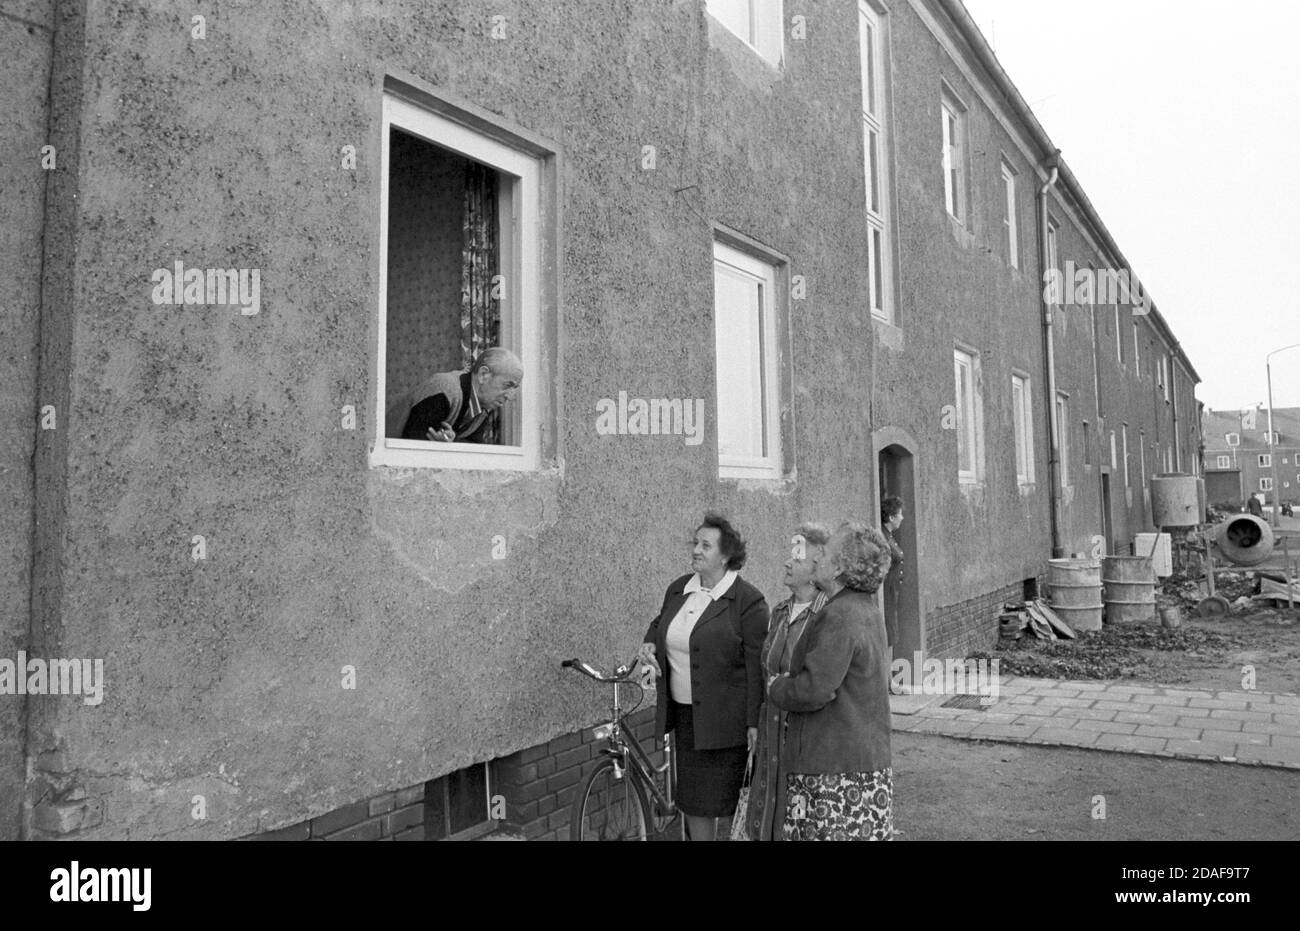 30 novembre 1983, Sassonia, Eilenburg: Conversazioni in una finestra. Nuovi bagni sono installati in edifici di appartamenti degli anni '50 e '60 nell'autunno 1984. Data esatta della registrazione non nota. Foto: Volkmar Heinz/dpa-Zentralbild/ZB Foto Stock